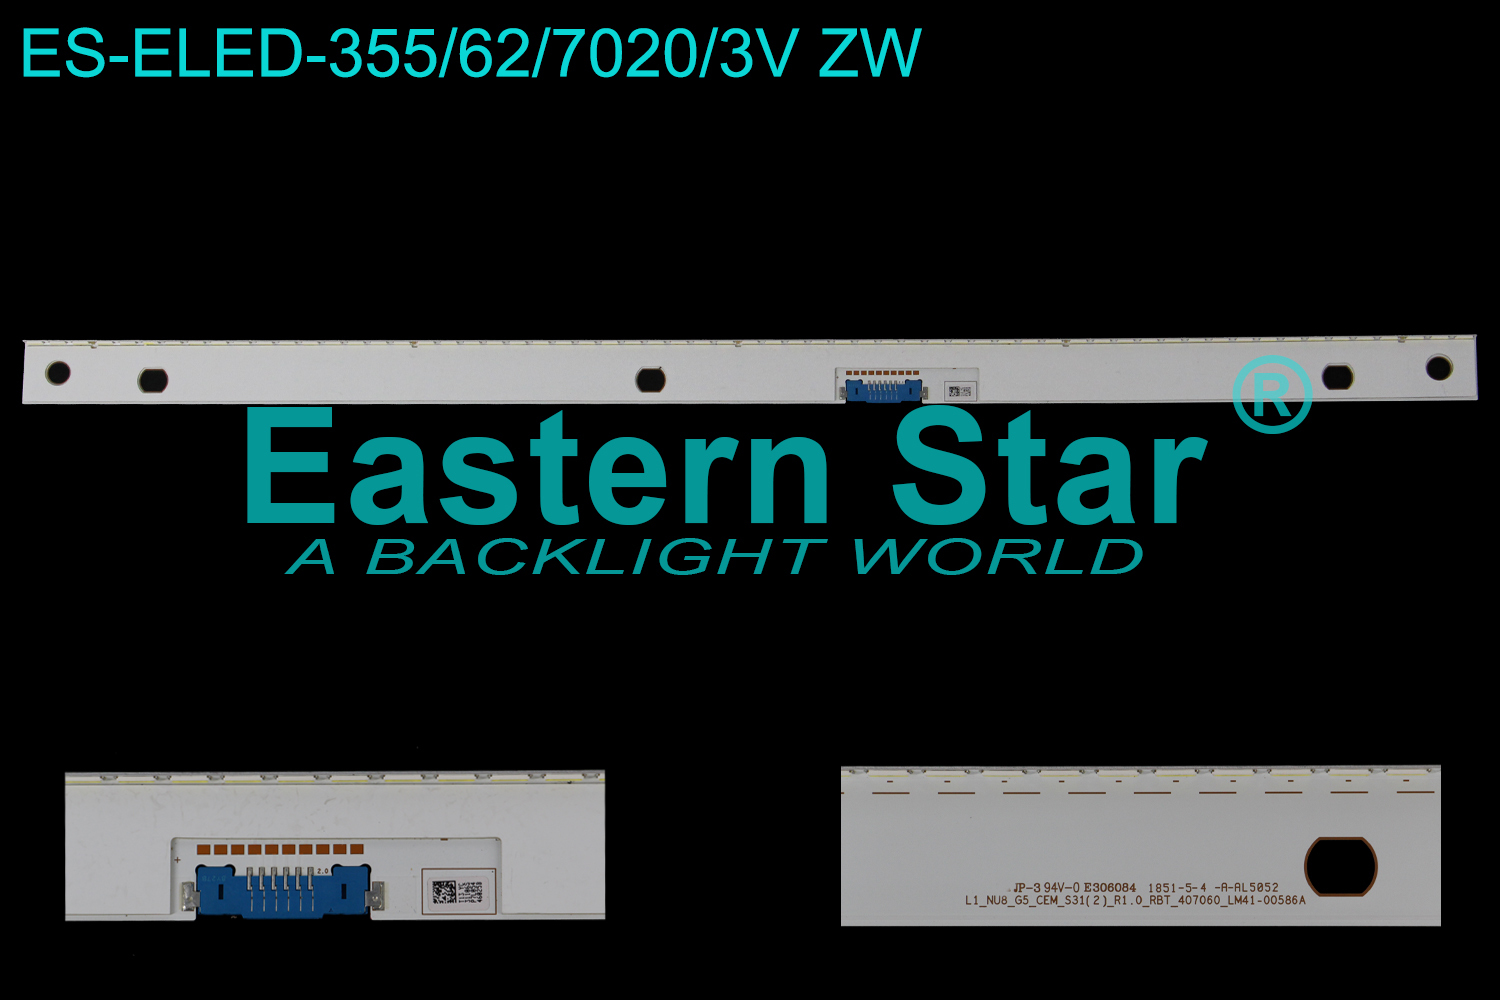 ES-ELED-355 ELED/EDGE TV backlight use for 75''Samsung L1_NU8_G5_CEM_S31(2)_R1.0_RBT_407060_LM41-00586A LED STRIPS(/)